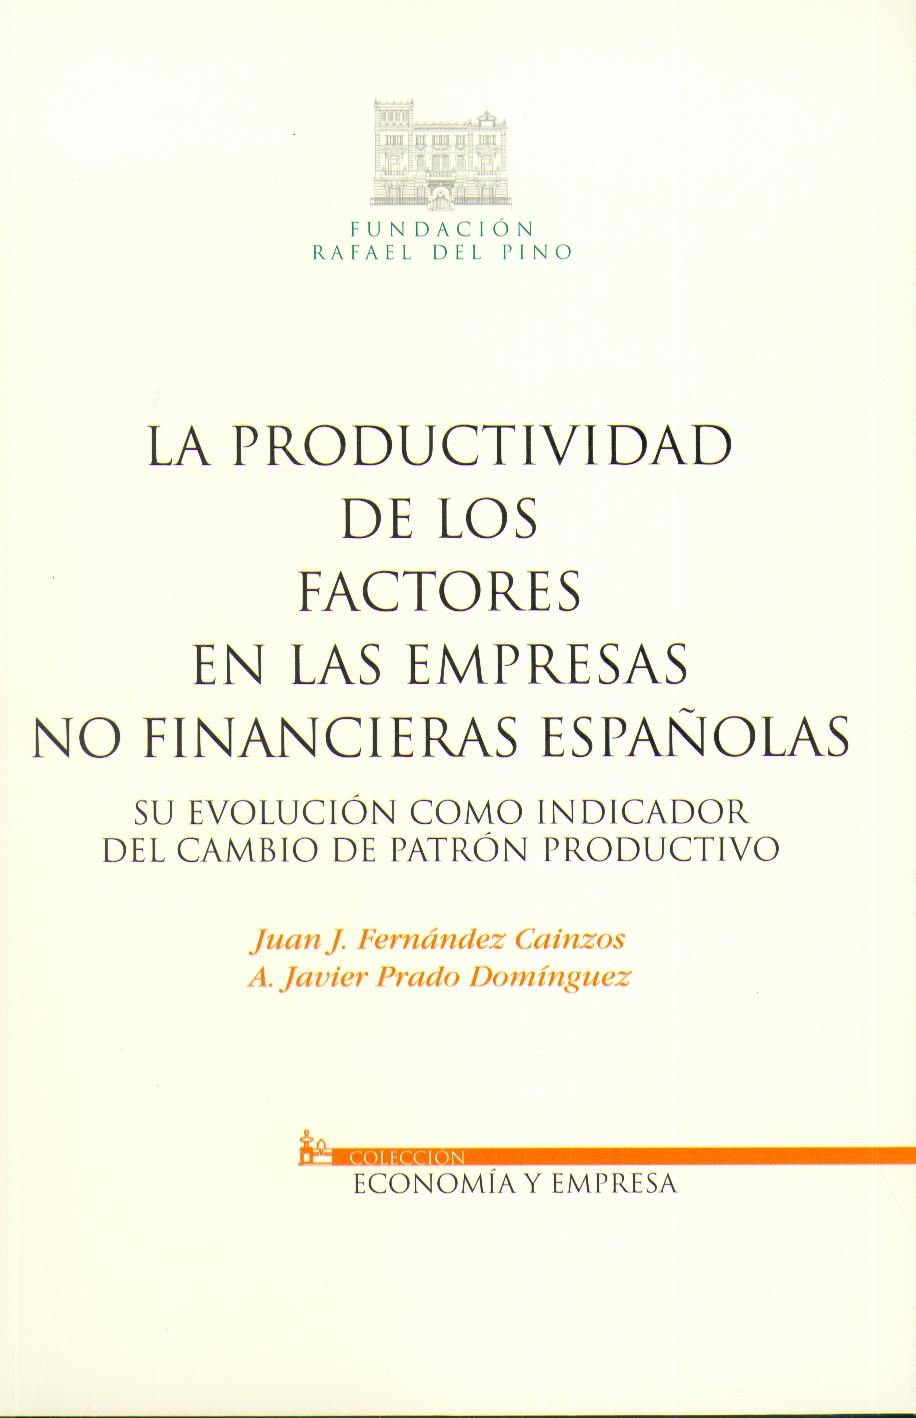 La Productividad de los Factores en las Empresas no Financieras Españolas. "Su Evolución como Indicador del Cambio de Patrón Productivo.". Su Evolución como Indicador del Cambio de Patrón Productivo.